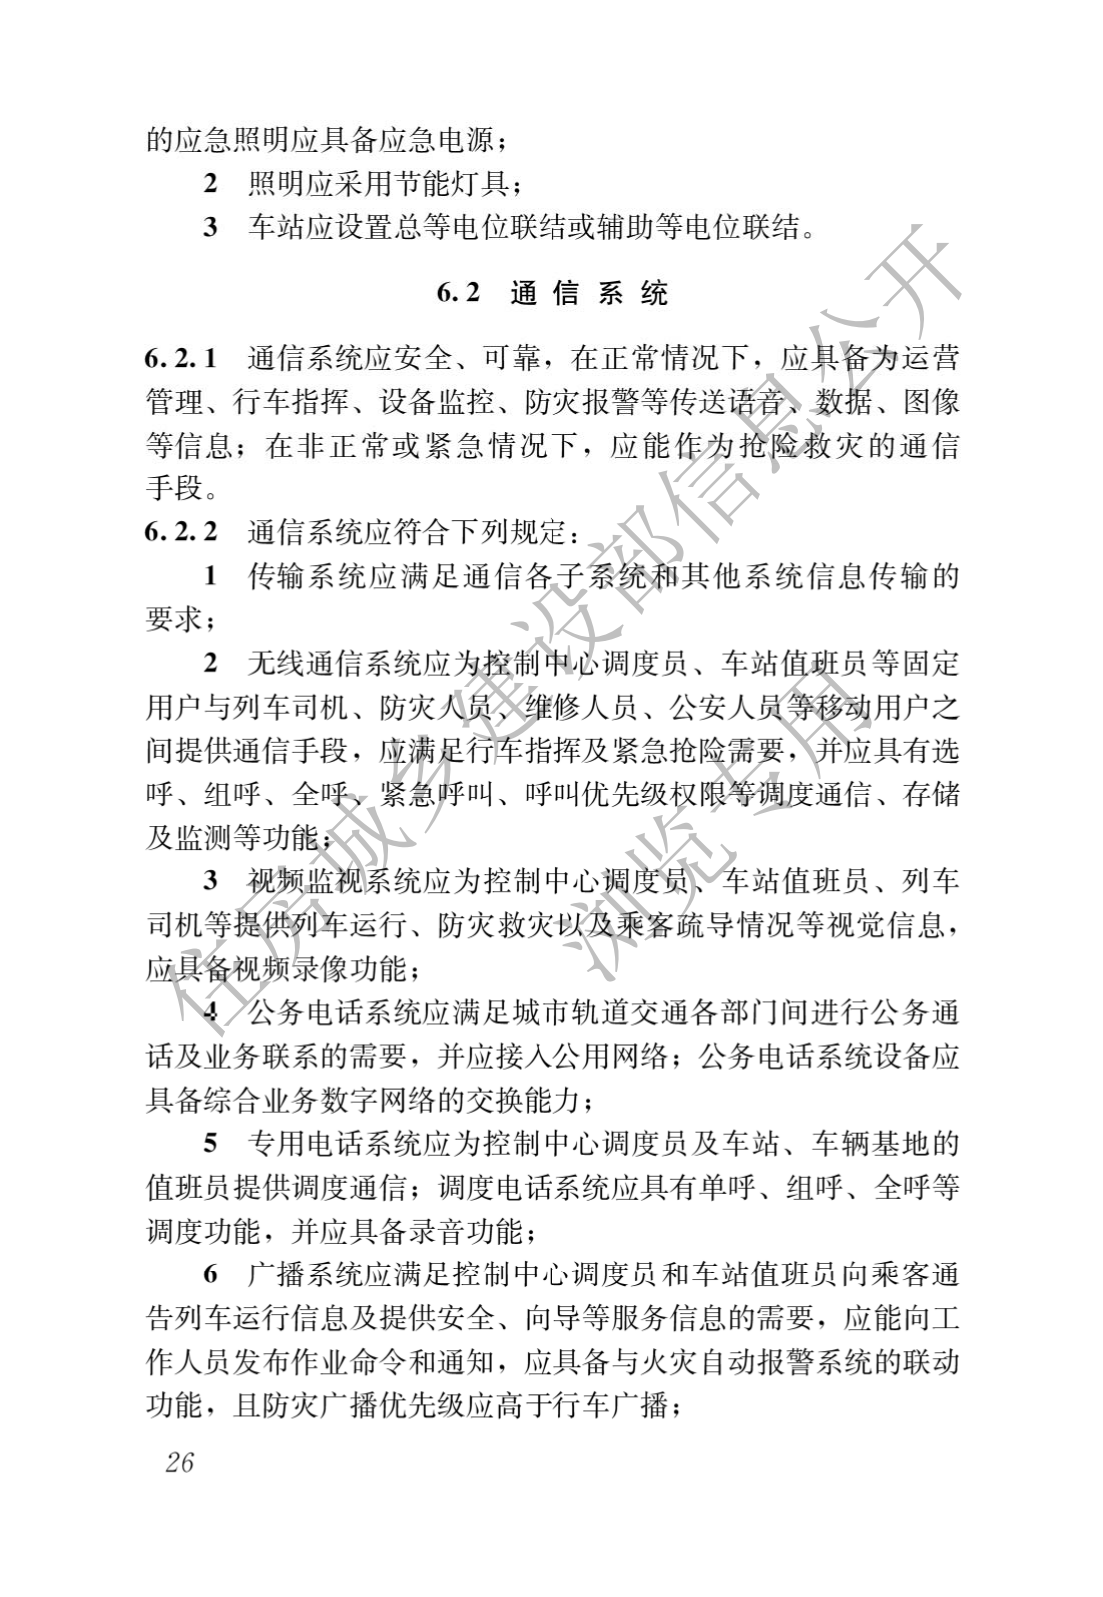 住房和城鄉建設部關于發布國家标準 《城市軌道交通工(gōng)程項目規範》的公告(圖30)